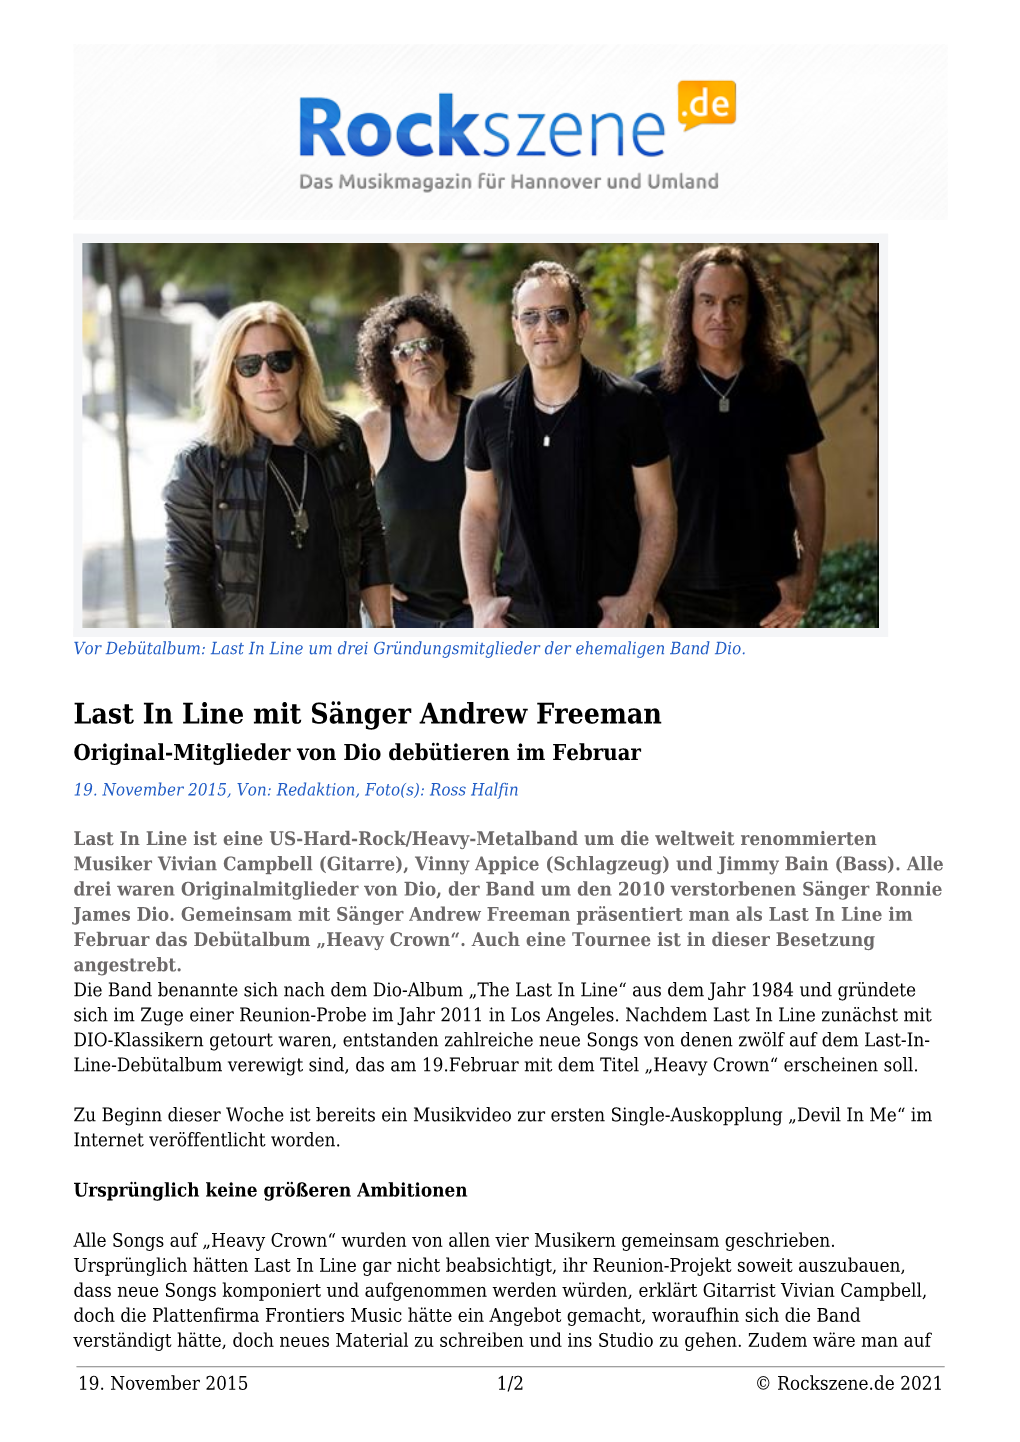 Last in Line Mit Sänger Andrew Freeman Original-Mitglieder Von Dio Debütieren Im Februar